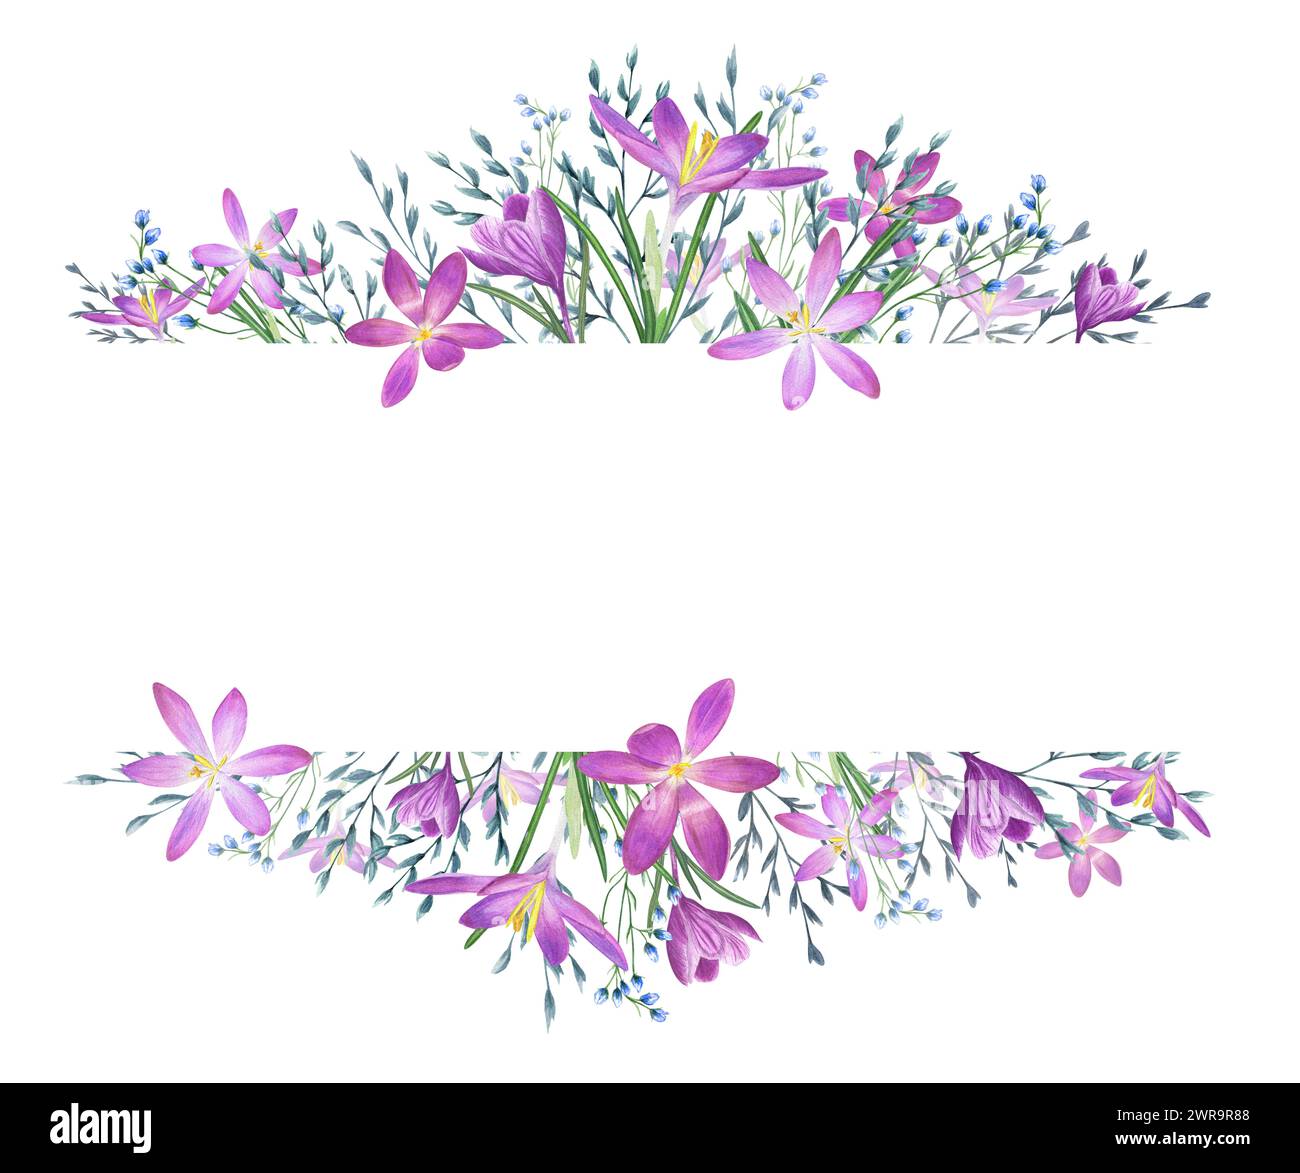 Krokusblüten und wilde Kräuter. Safran- und Frühlingswiesen, Gartenpflanzen. Blaue, violette Blüten. Horizontaler Rahmen mit Kopierraum für Text. Stockfoto